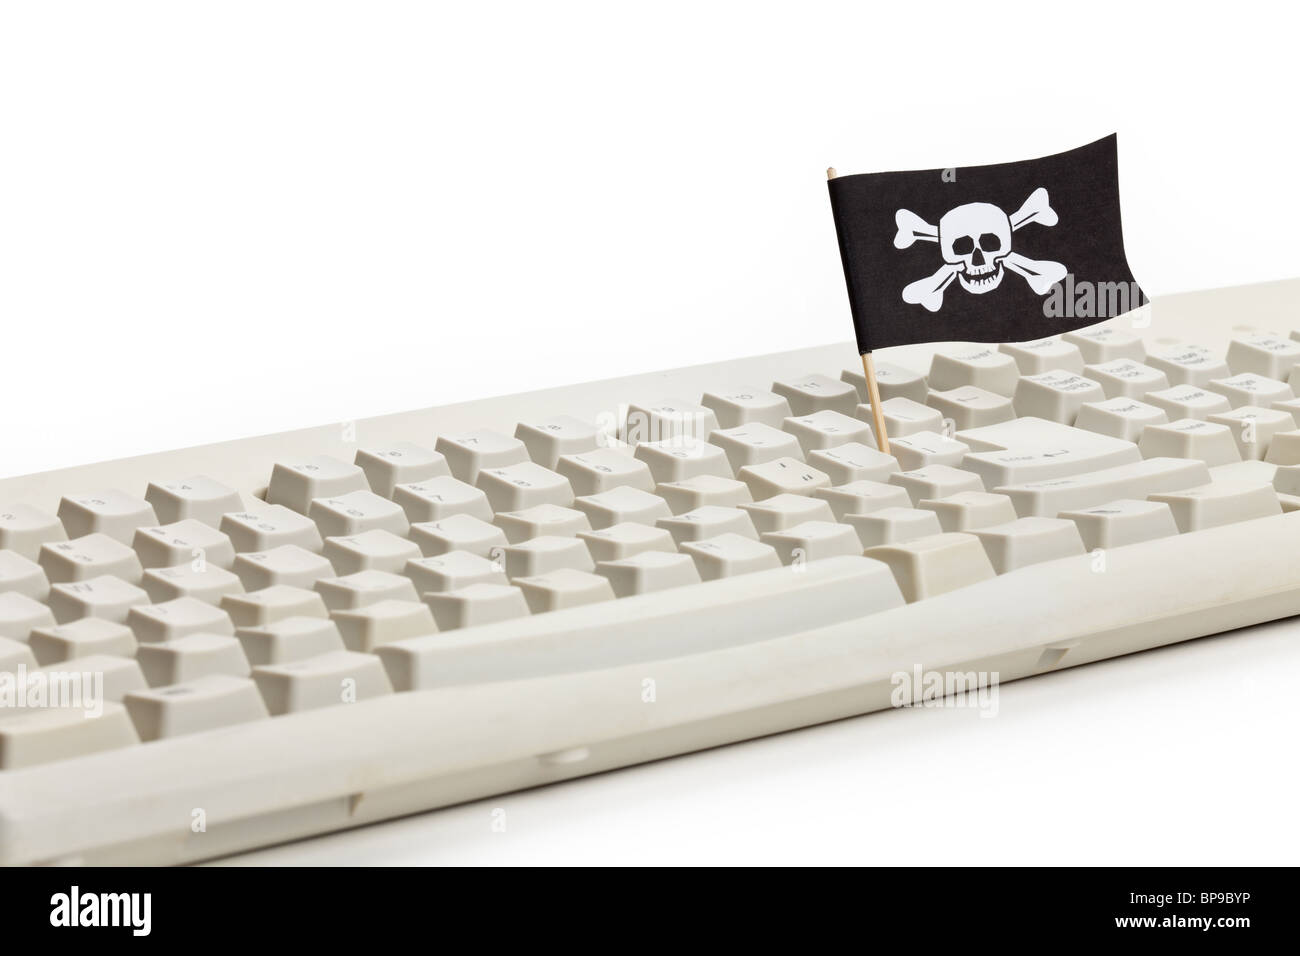 Drapeau pirate et clavier de l'ordinateur, concept de Hacker Informatique Banque D'Images